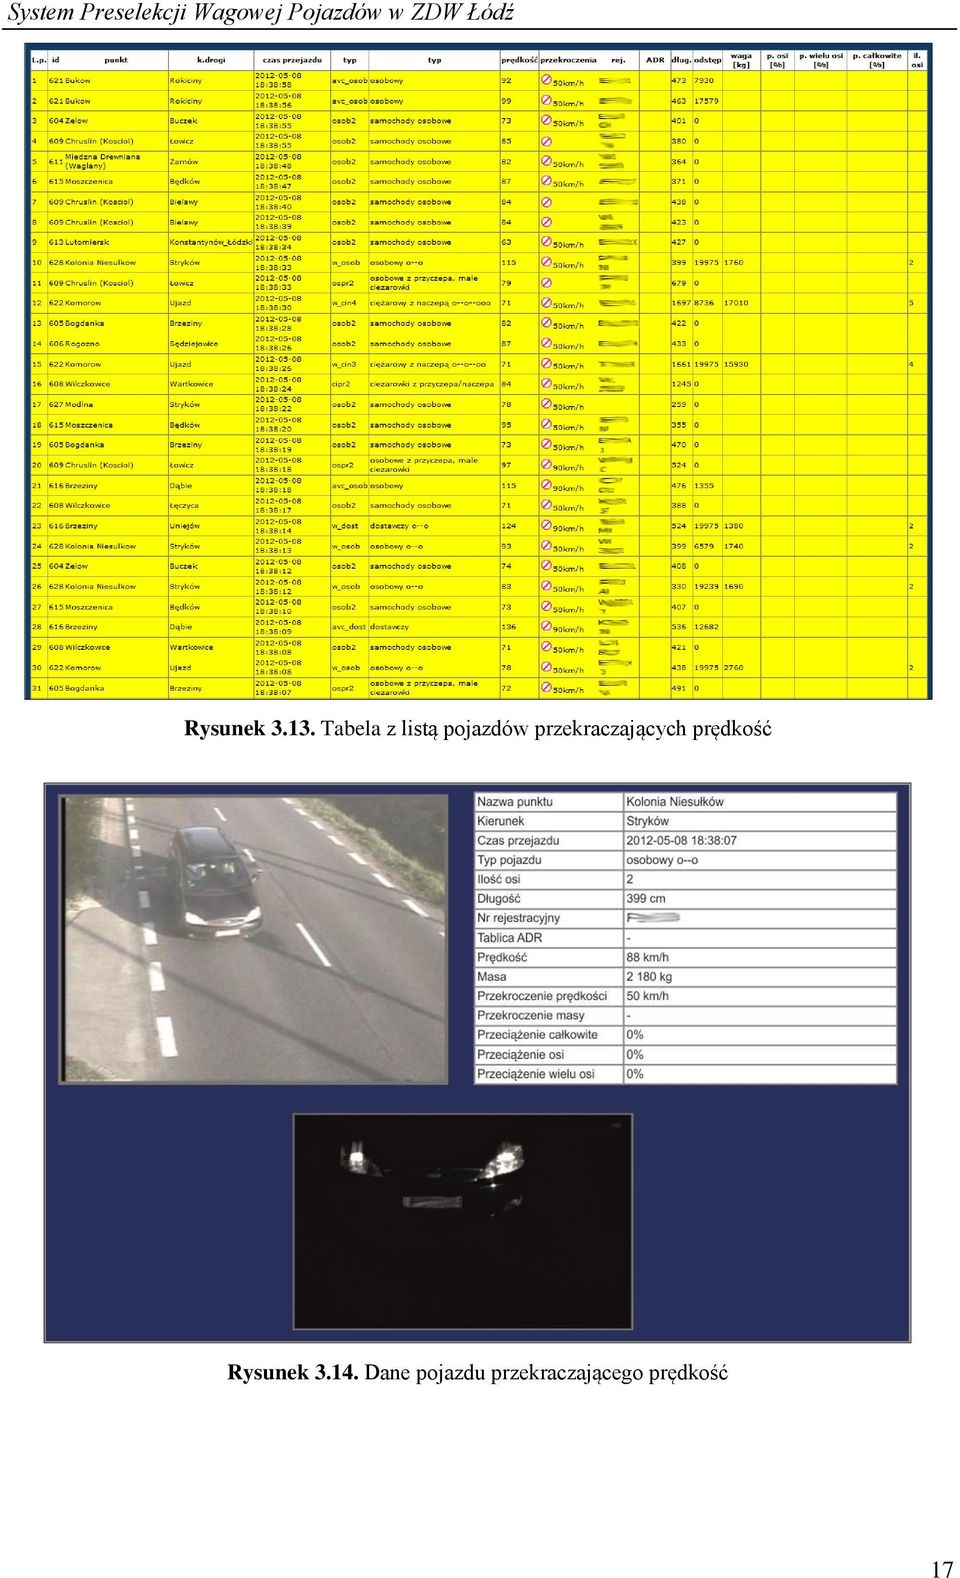 Tabela z listą pojazdów przekraczających